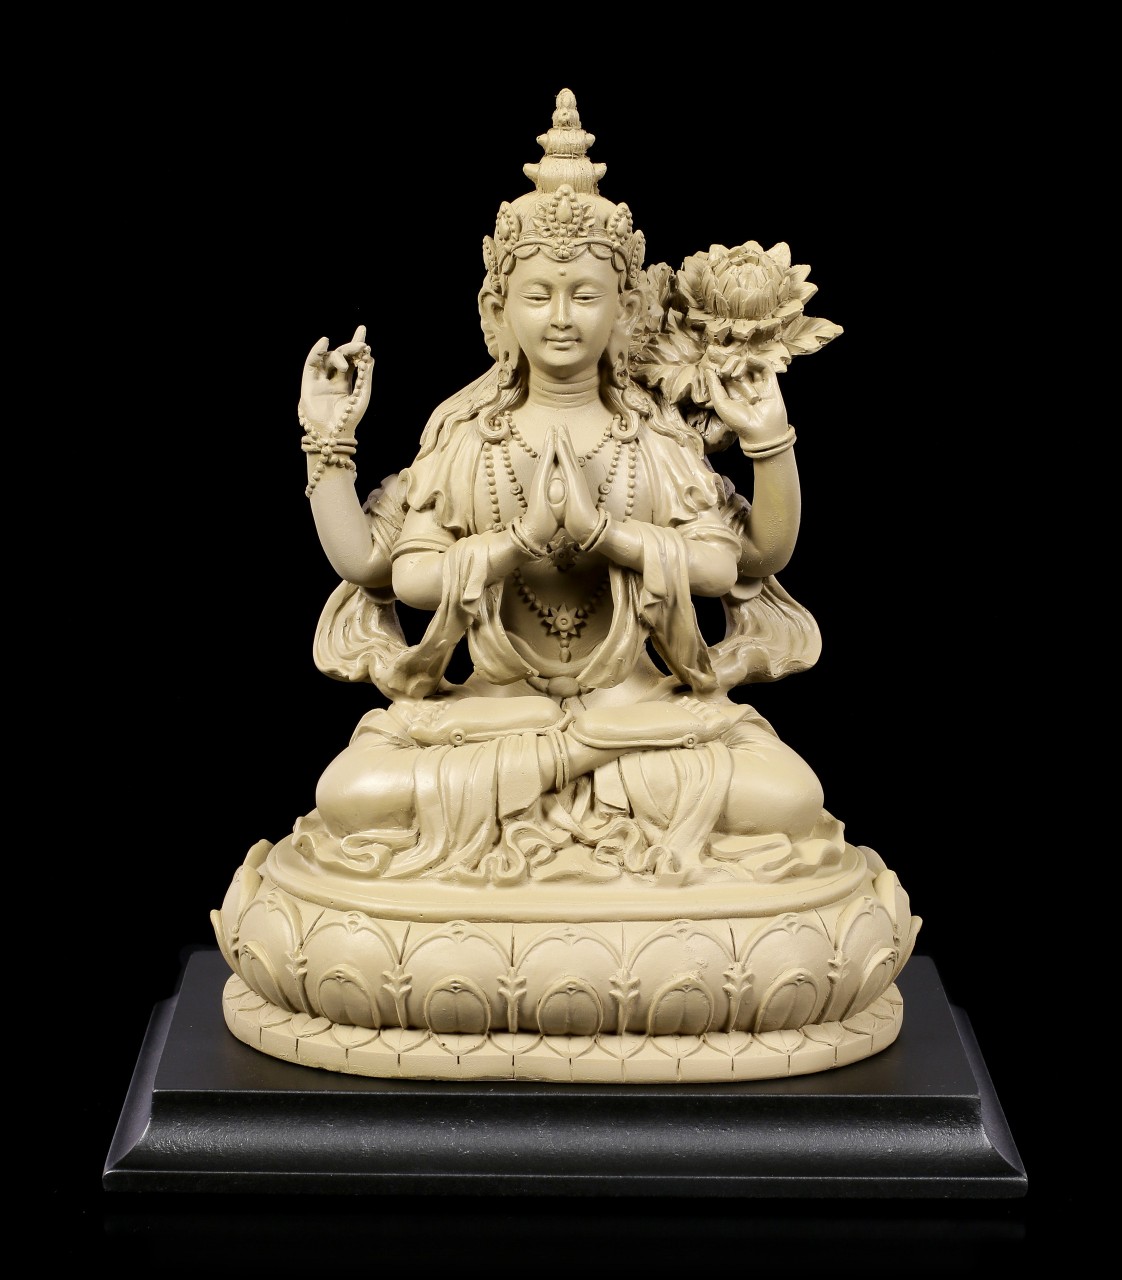 Buddha Figurine - Avalokiteshvara - Compassion